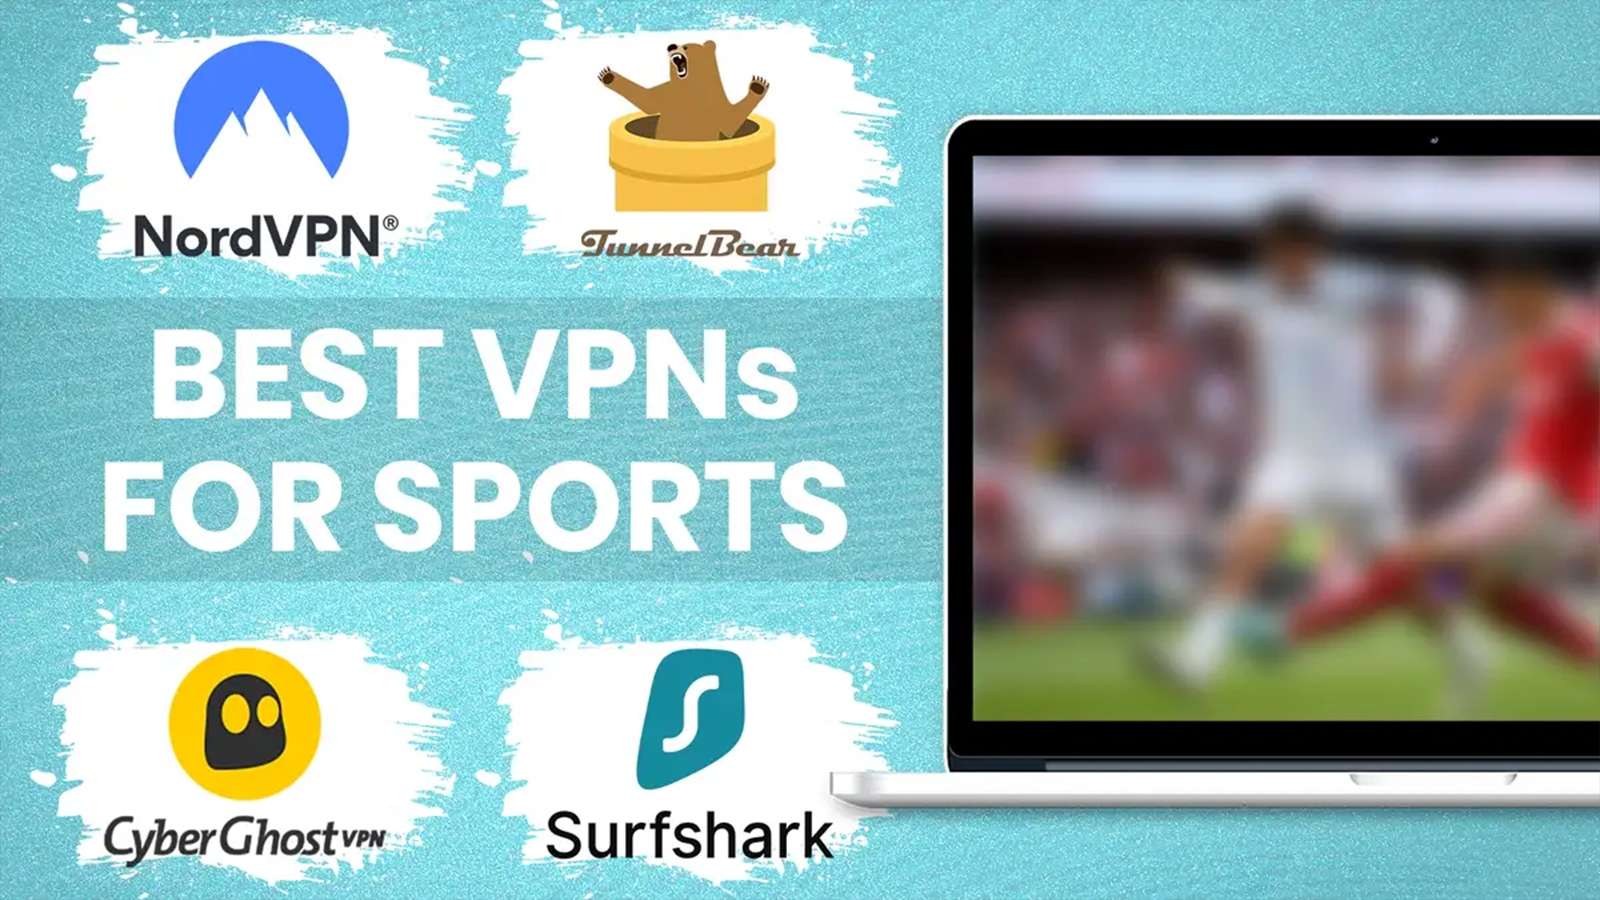 Best VPN sports